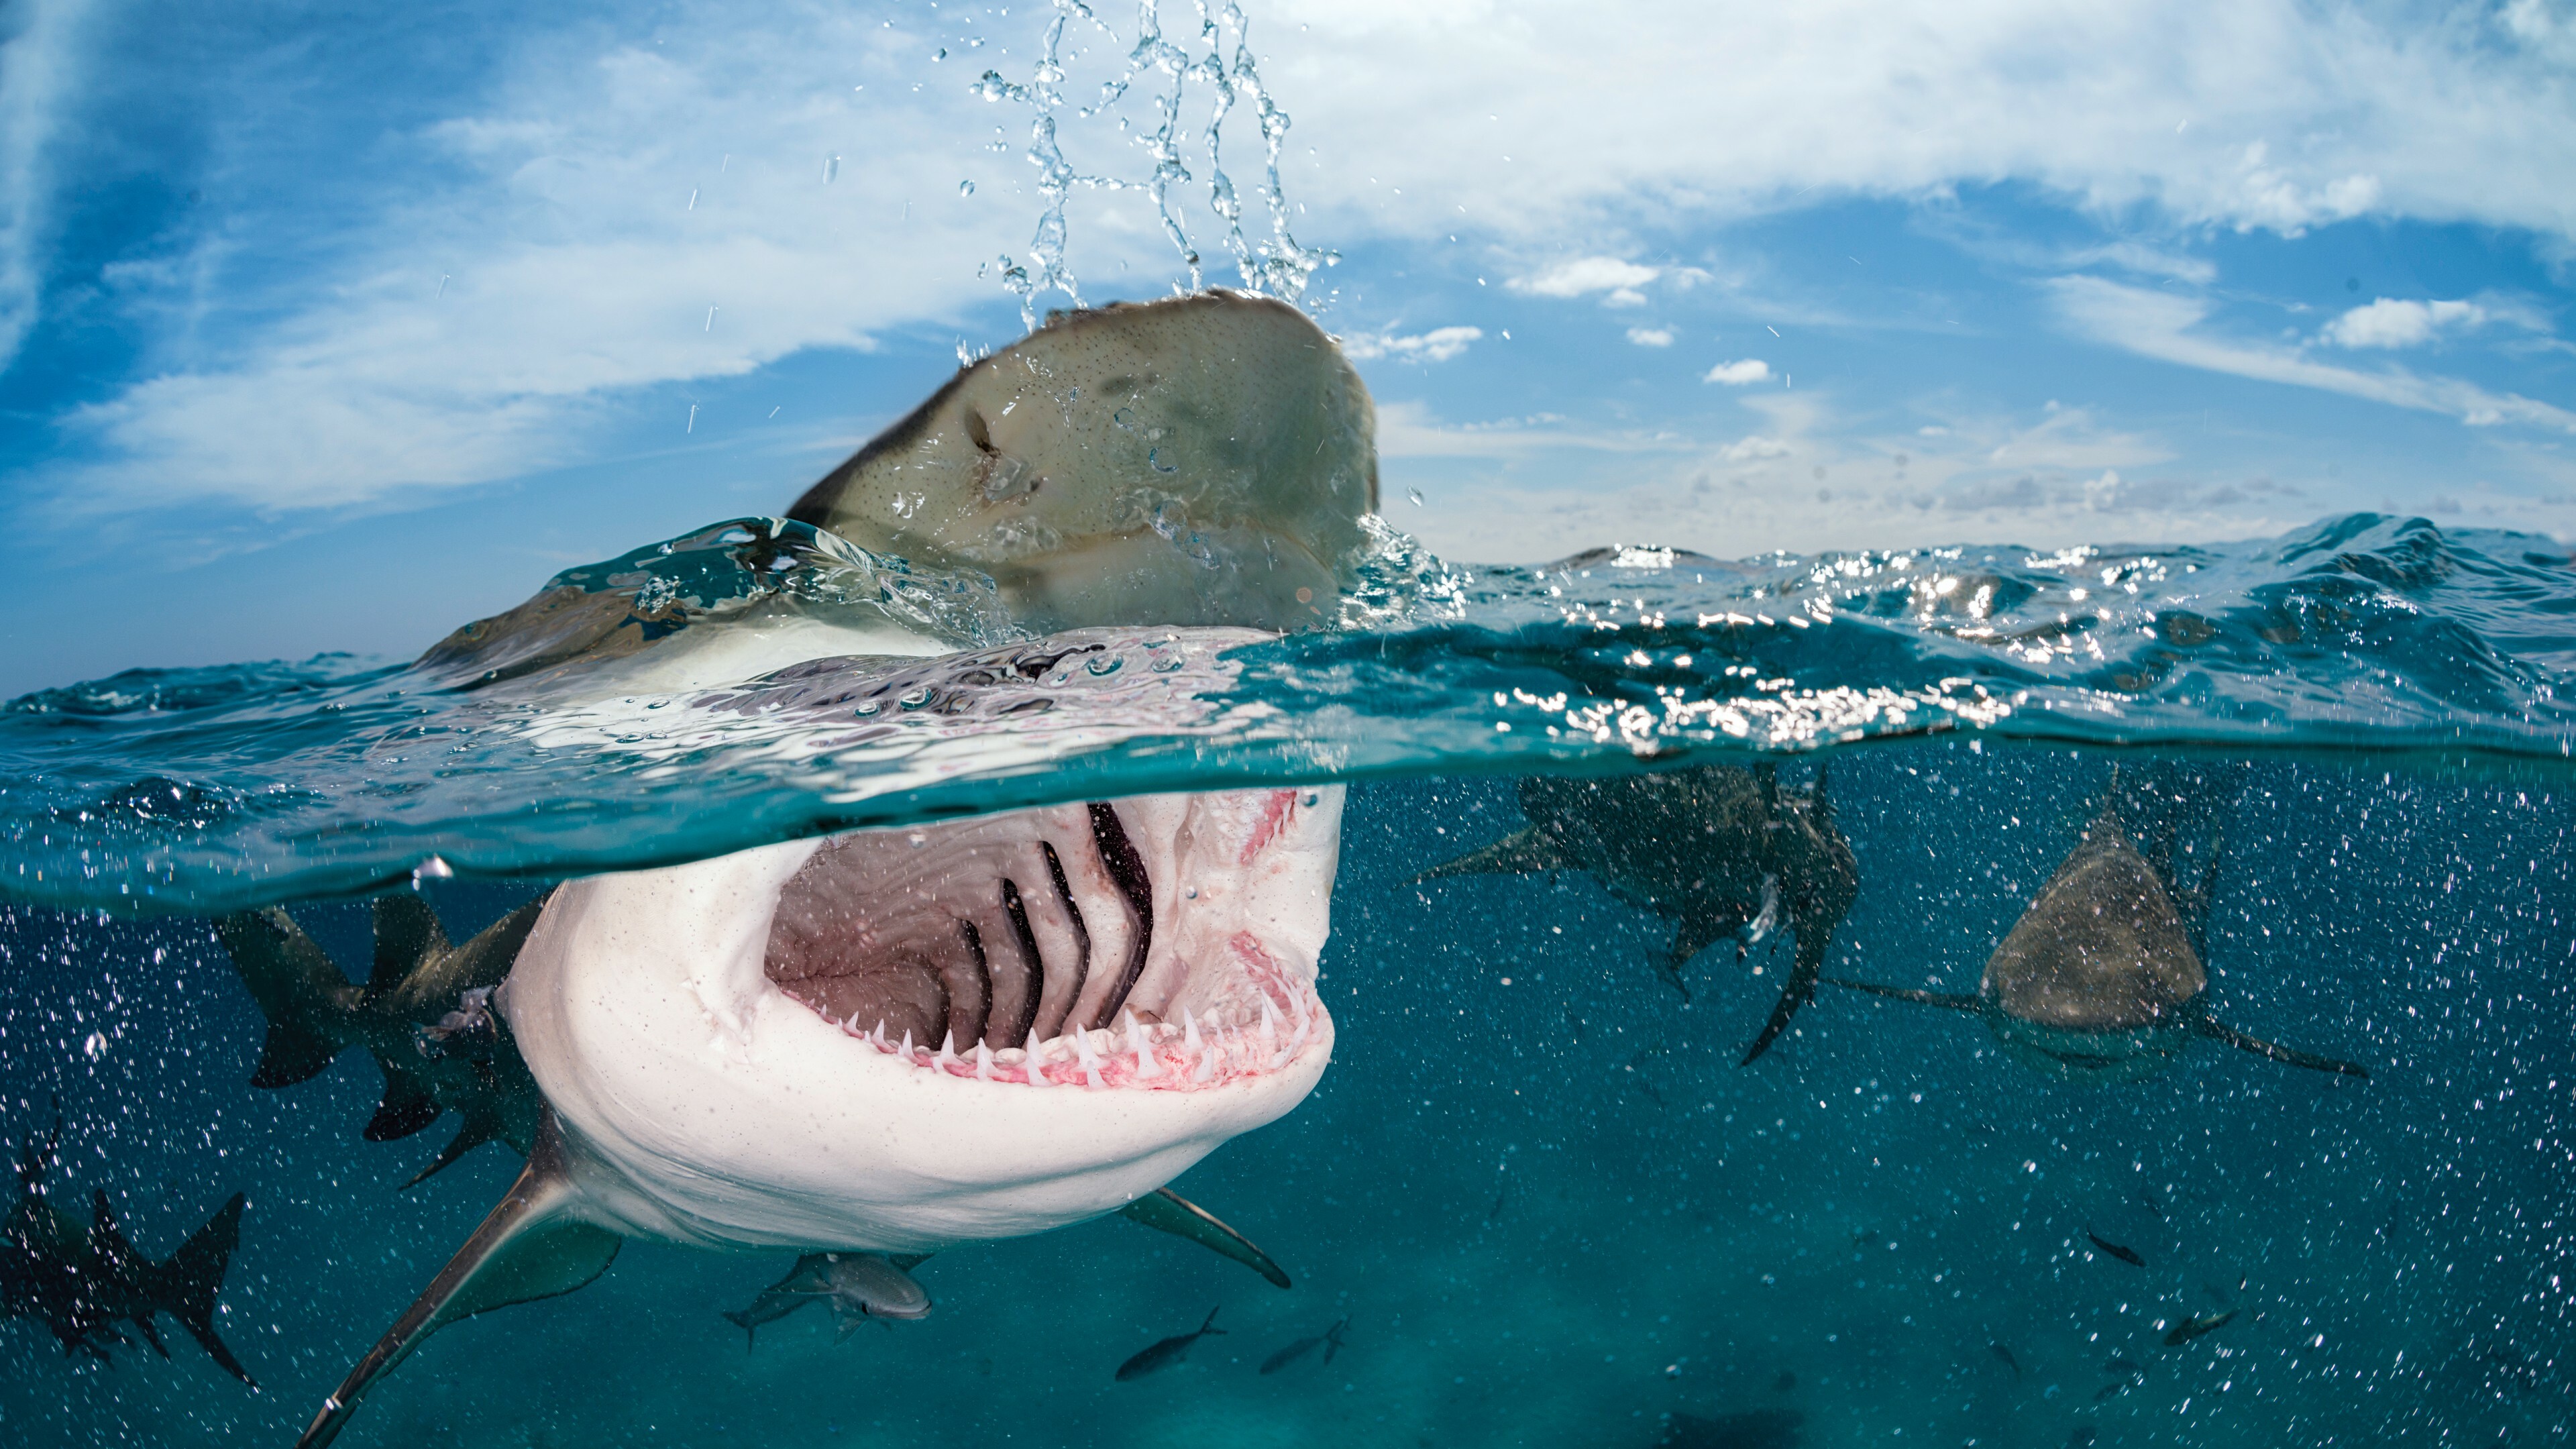 Shark: Ocean, Diving, Underwater, Jaws, Water predator, Fish. 3840x2160 4K Wallpaper.